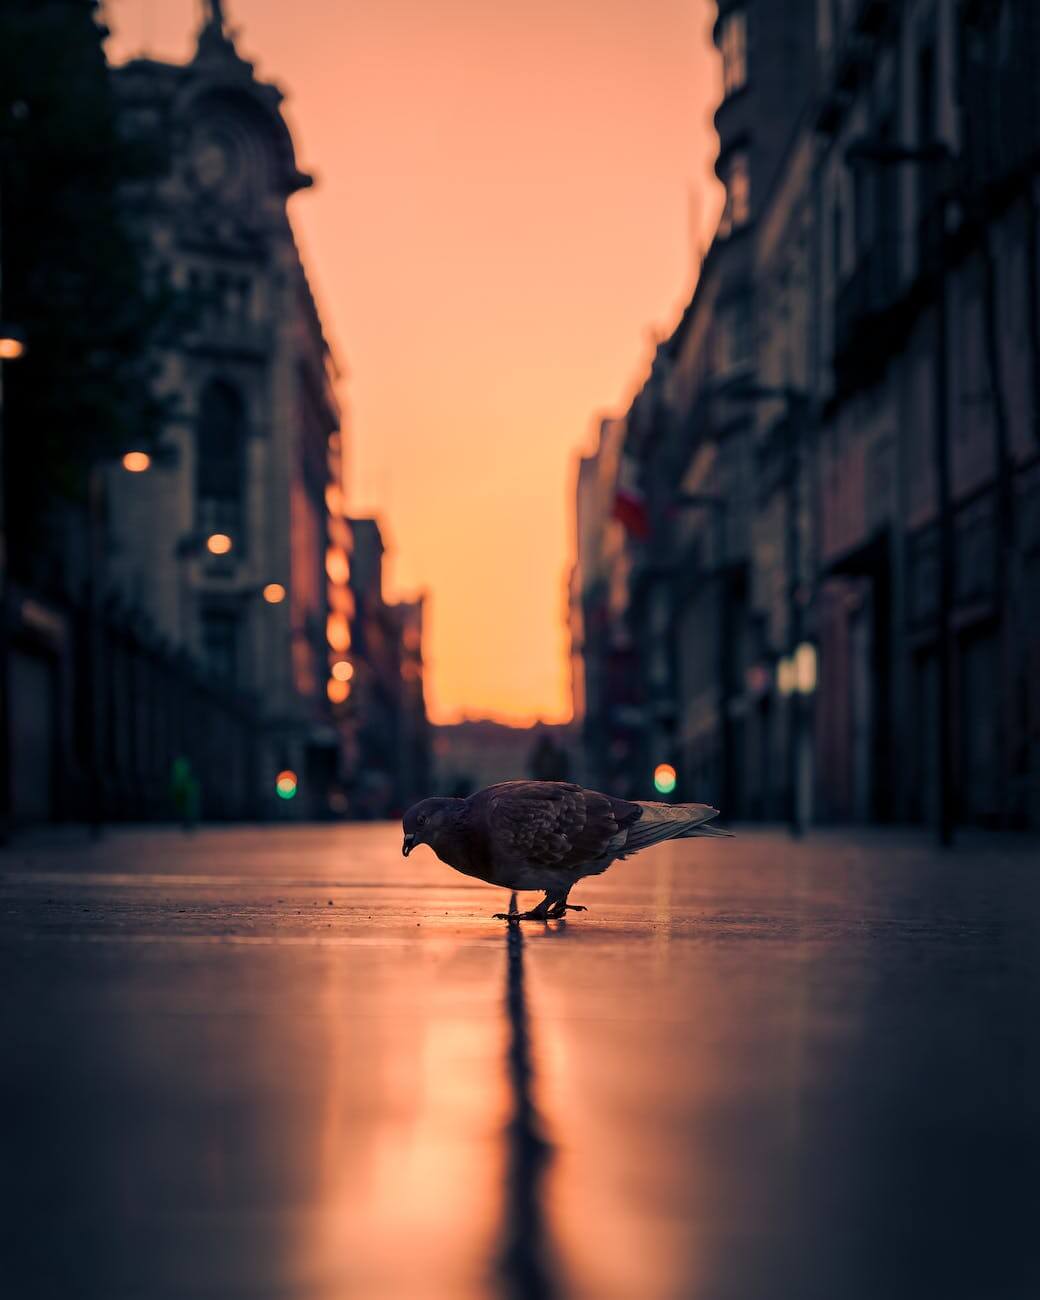 bird on city street